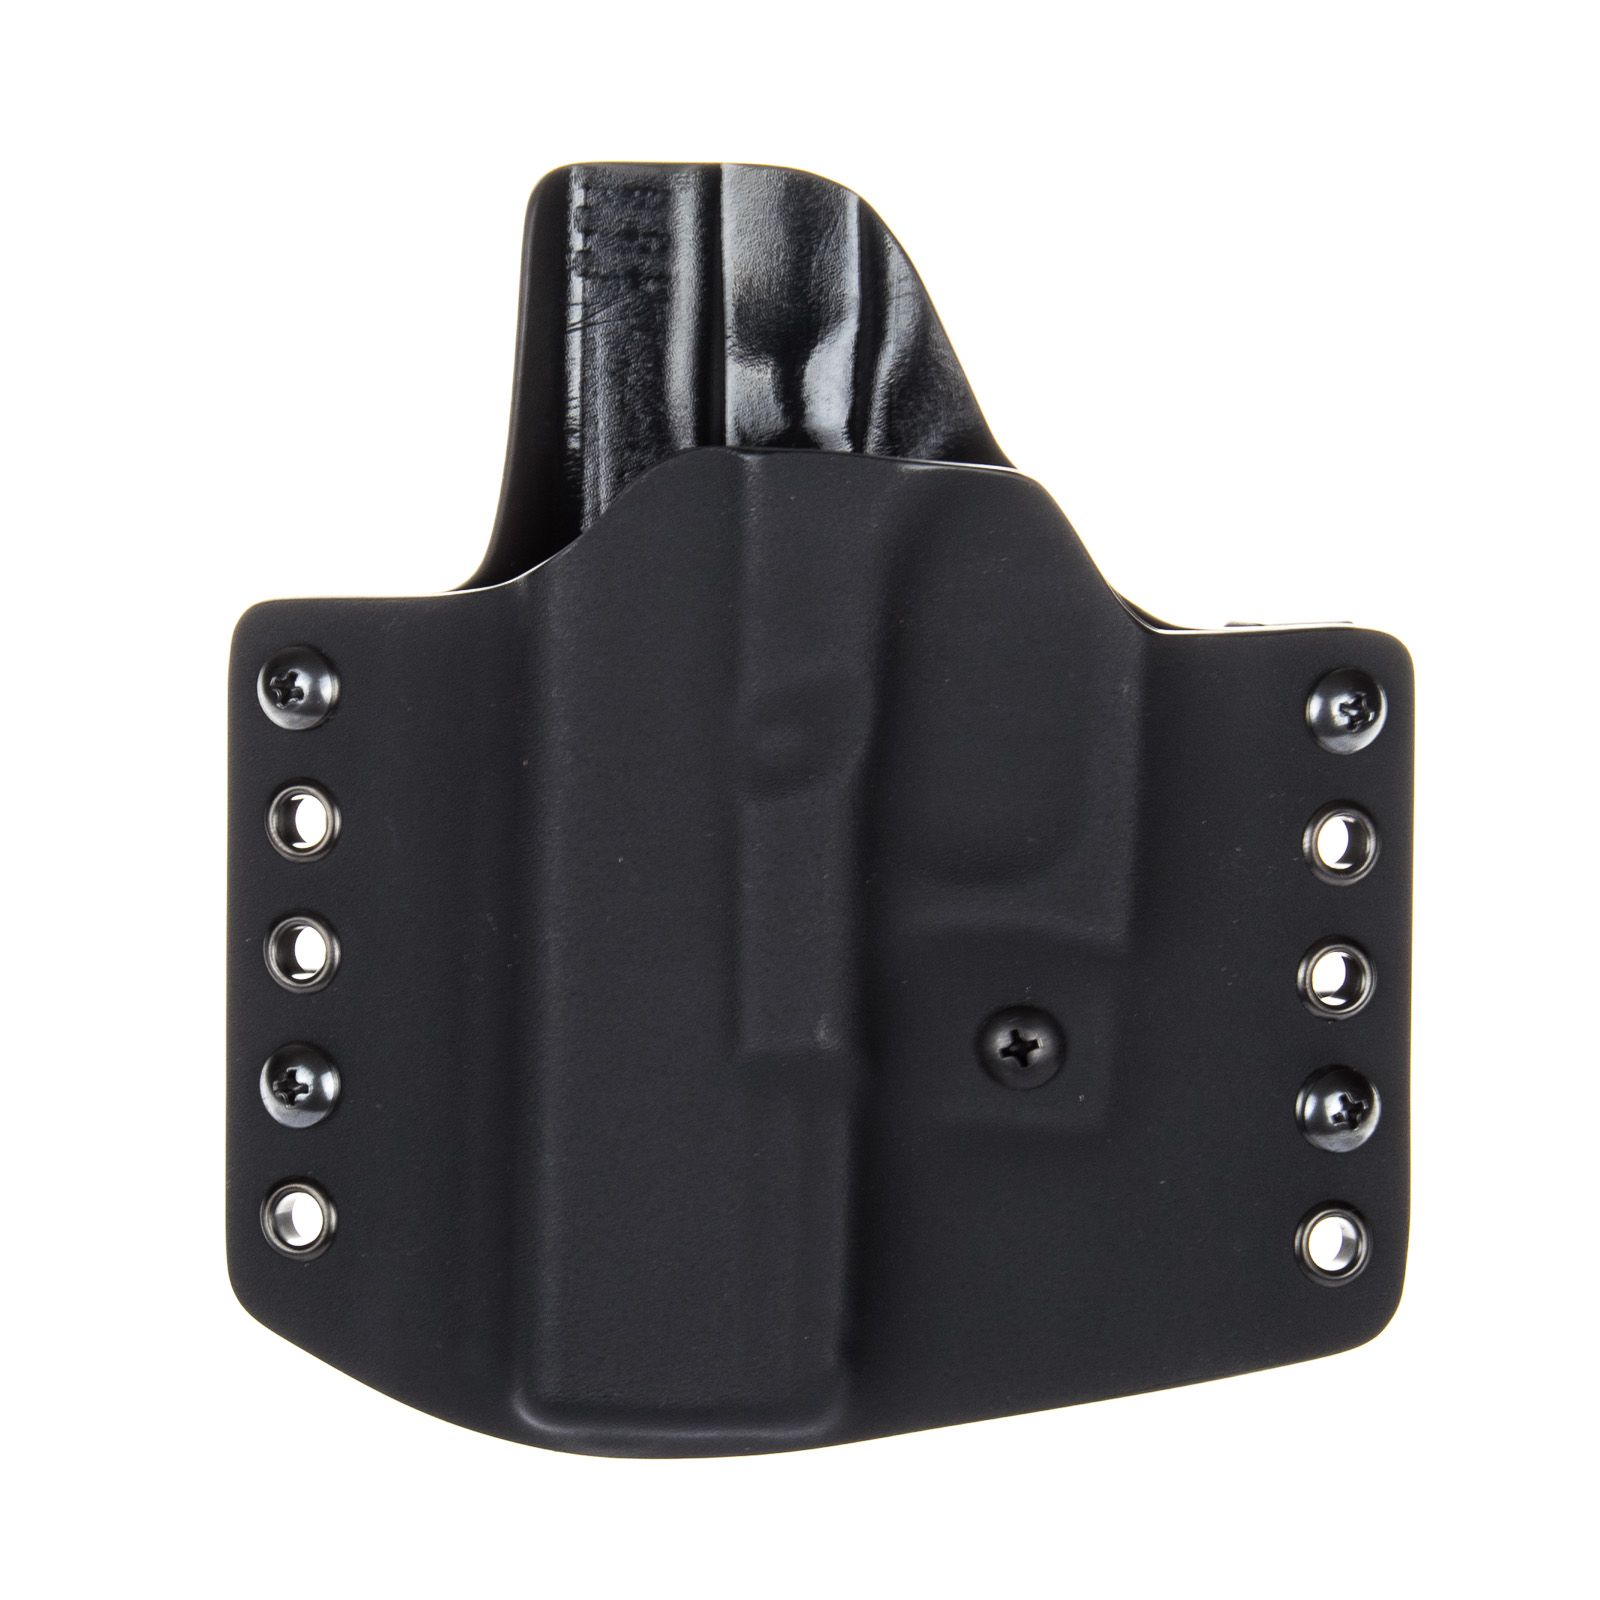 Levostranné vnější pouzdro RHholster, poloviční sweatguard, černá/černá (Glock 17/22/31)